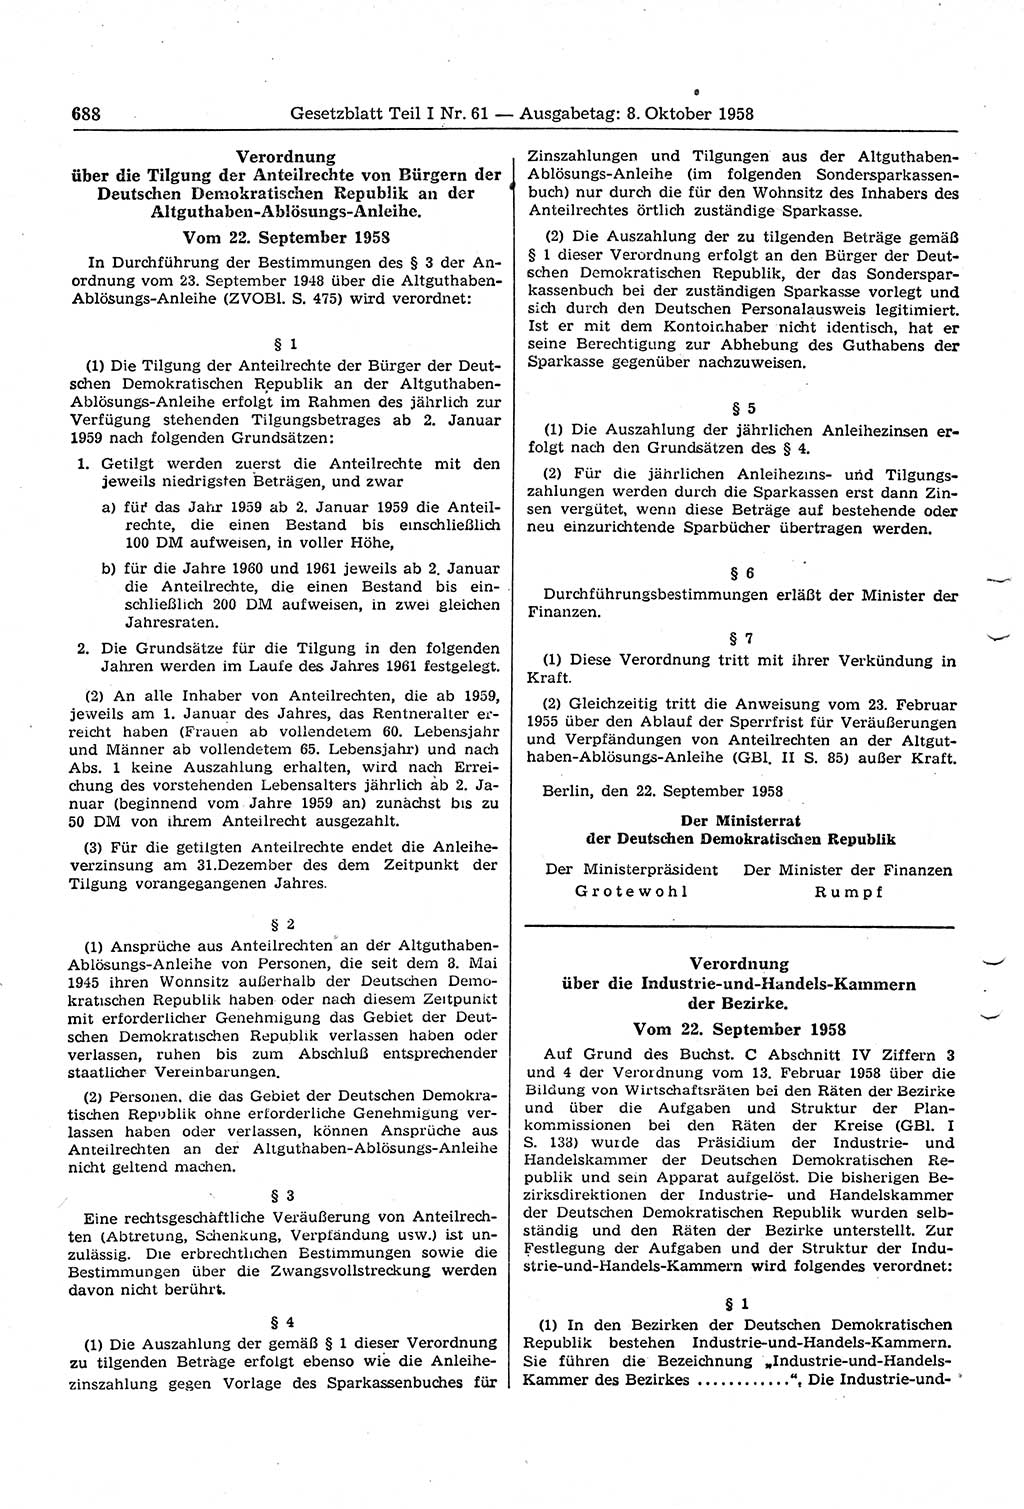 Gesetzblatt (GBl.) der Deutschen Demokratischen Republik (DDR) Teil Ⅰ 1958, Seite 688 (GBl. DDR Ⅰ 1958, S. 688)